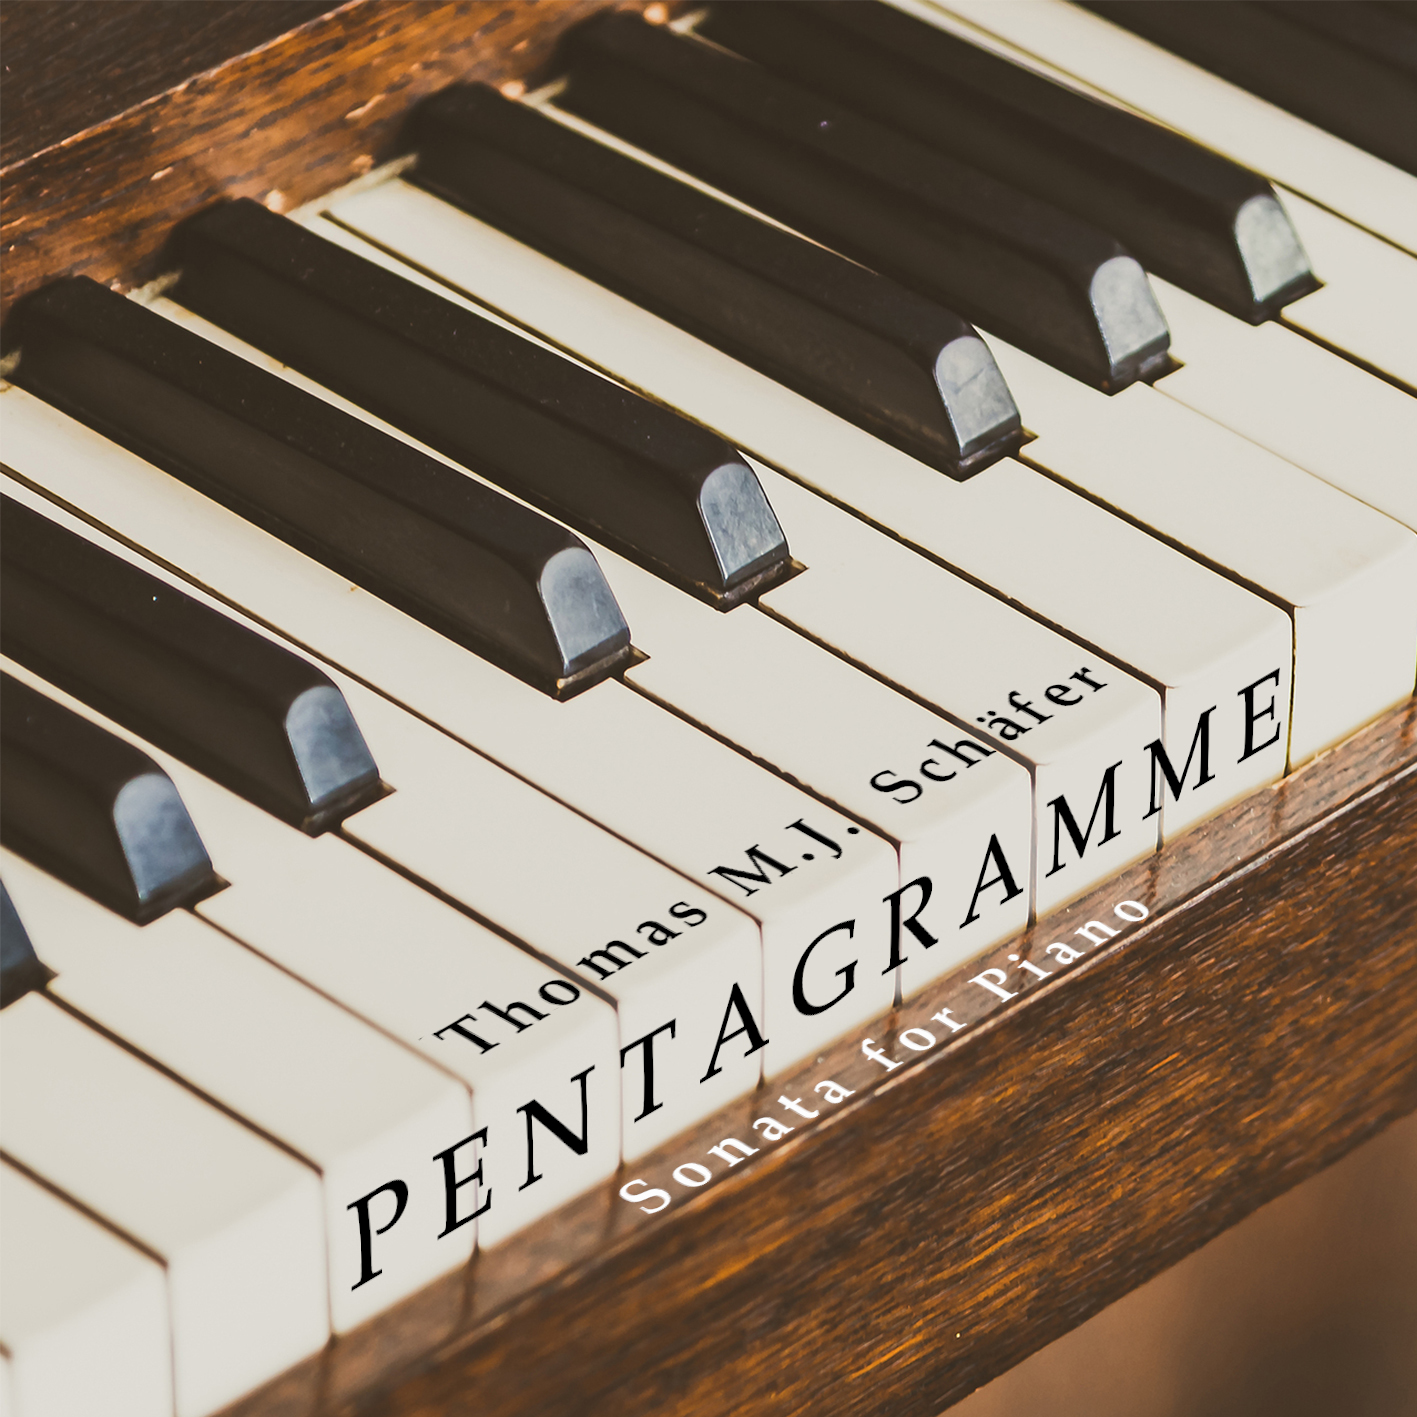 Thomas Schäfer - Pentagramme - sheet music by Edition Svitzer